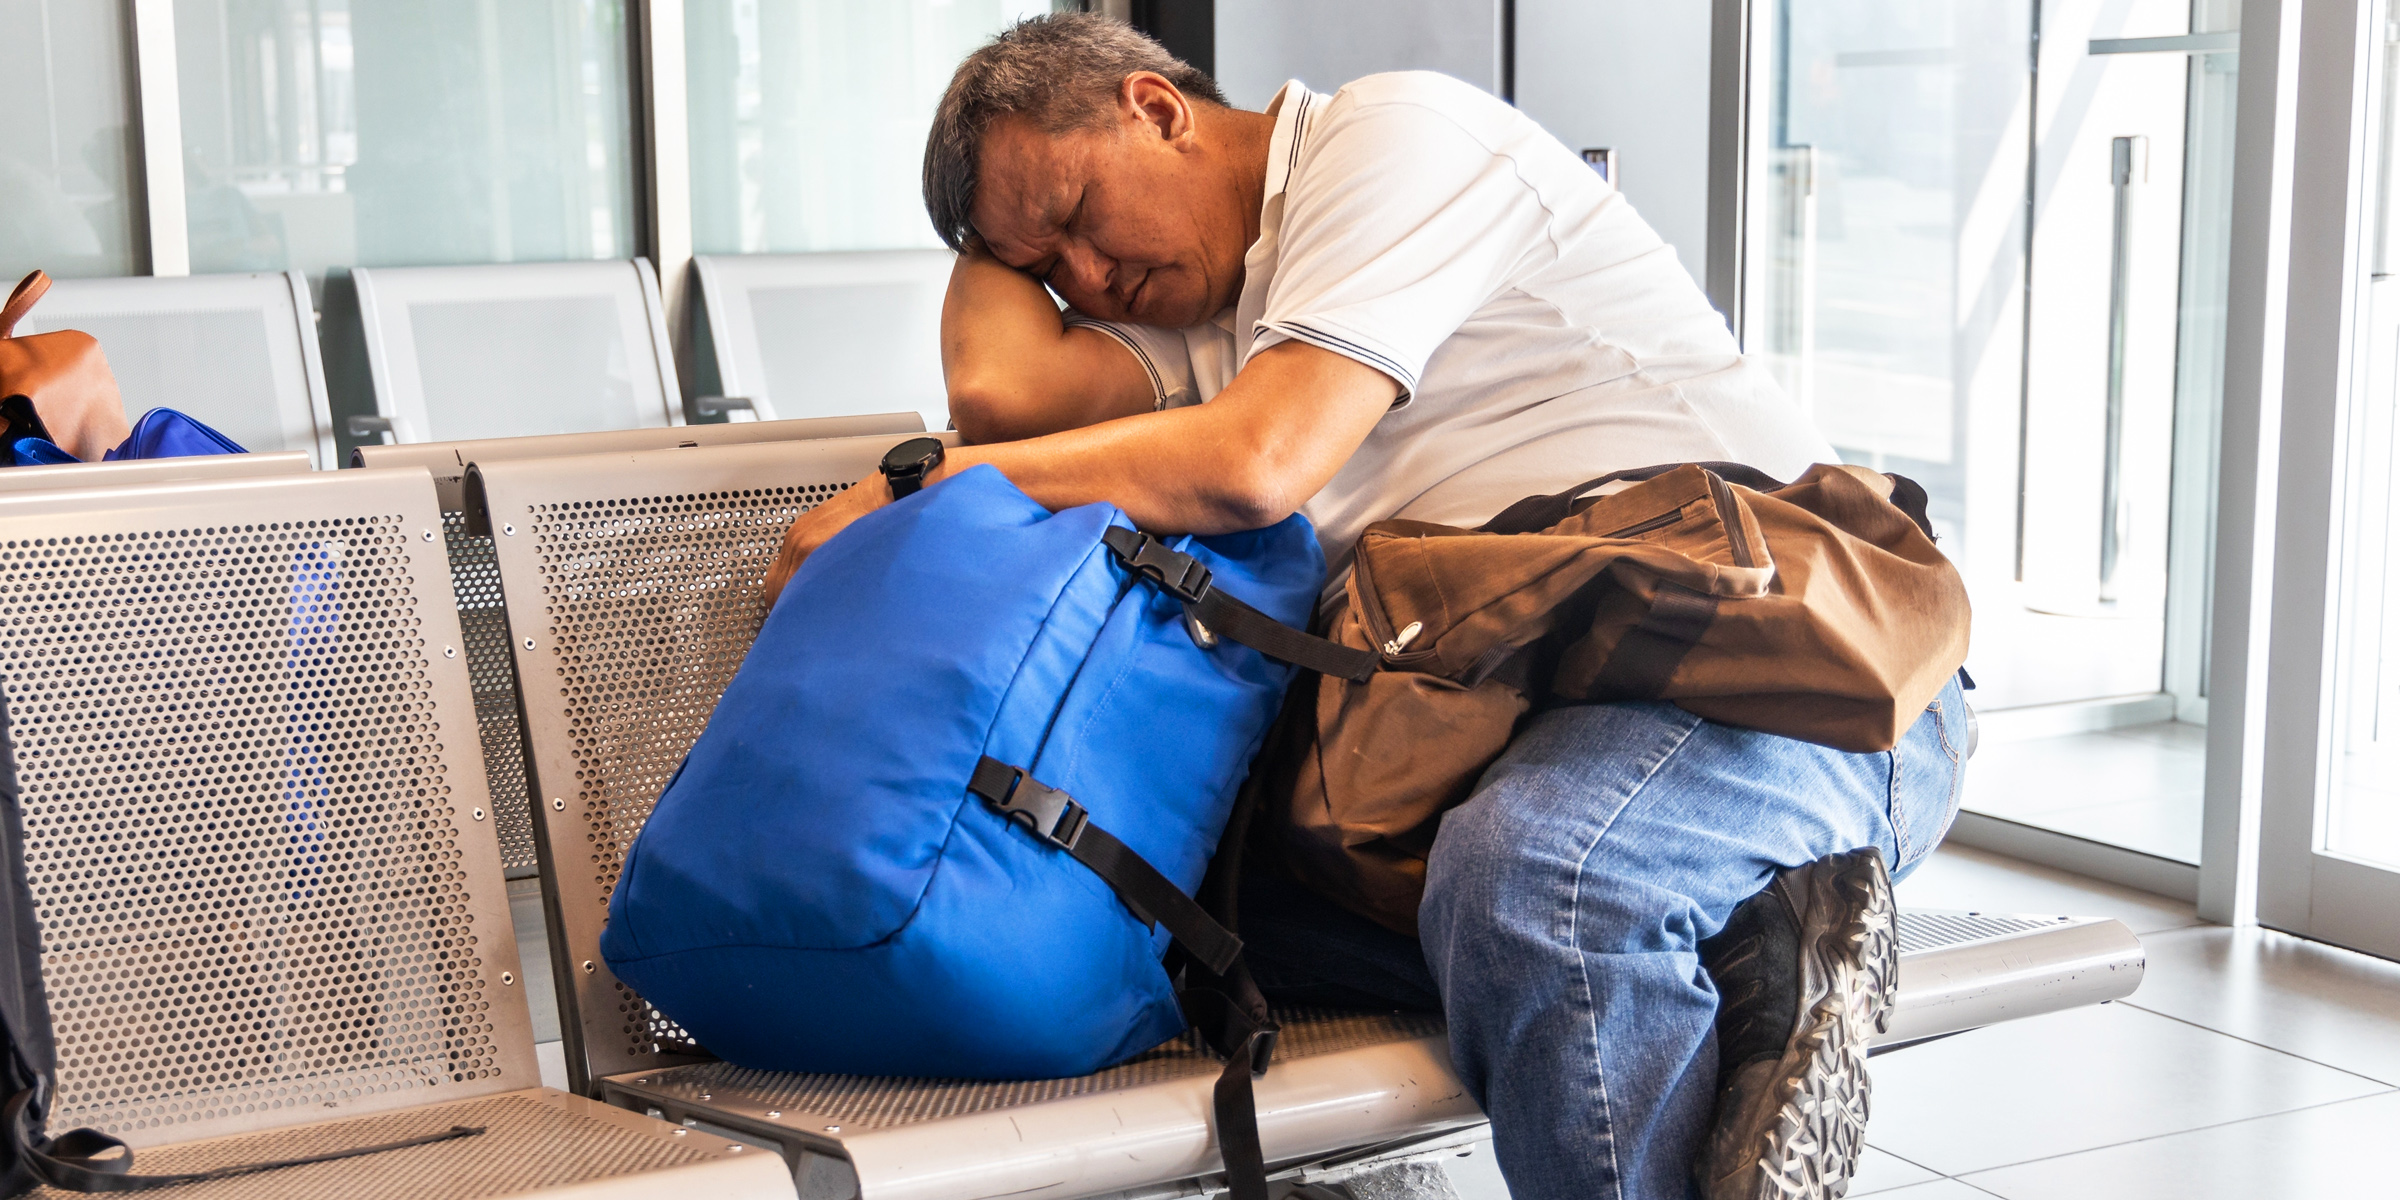 A man sleeping in an airport | Source: Shutterstock